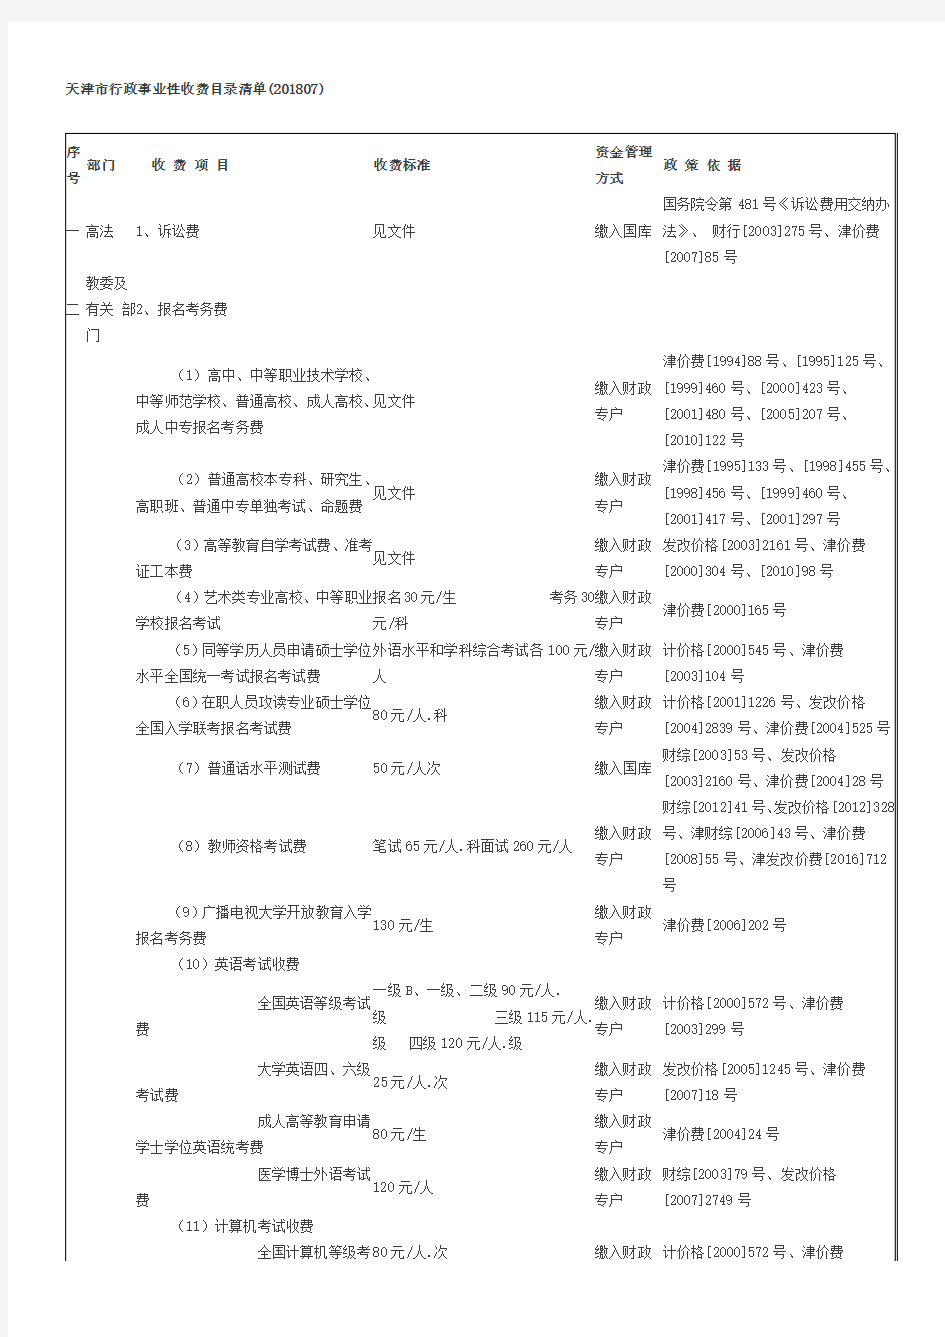 天津市行政事业性收费目录清单(201807)